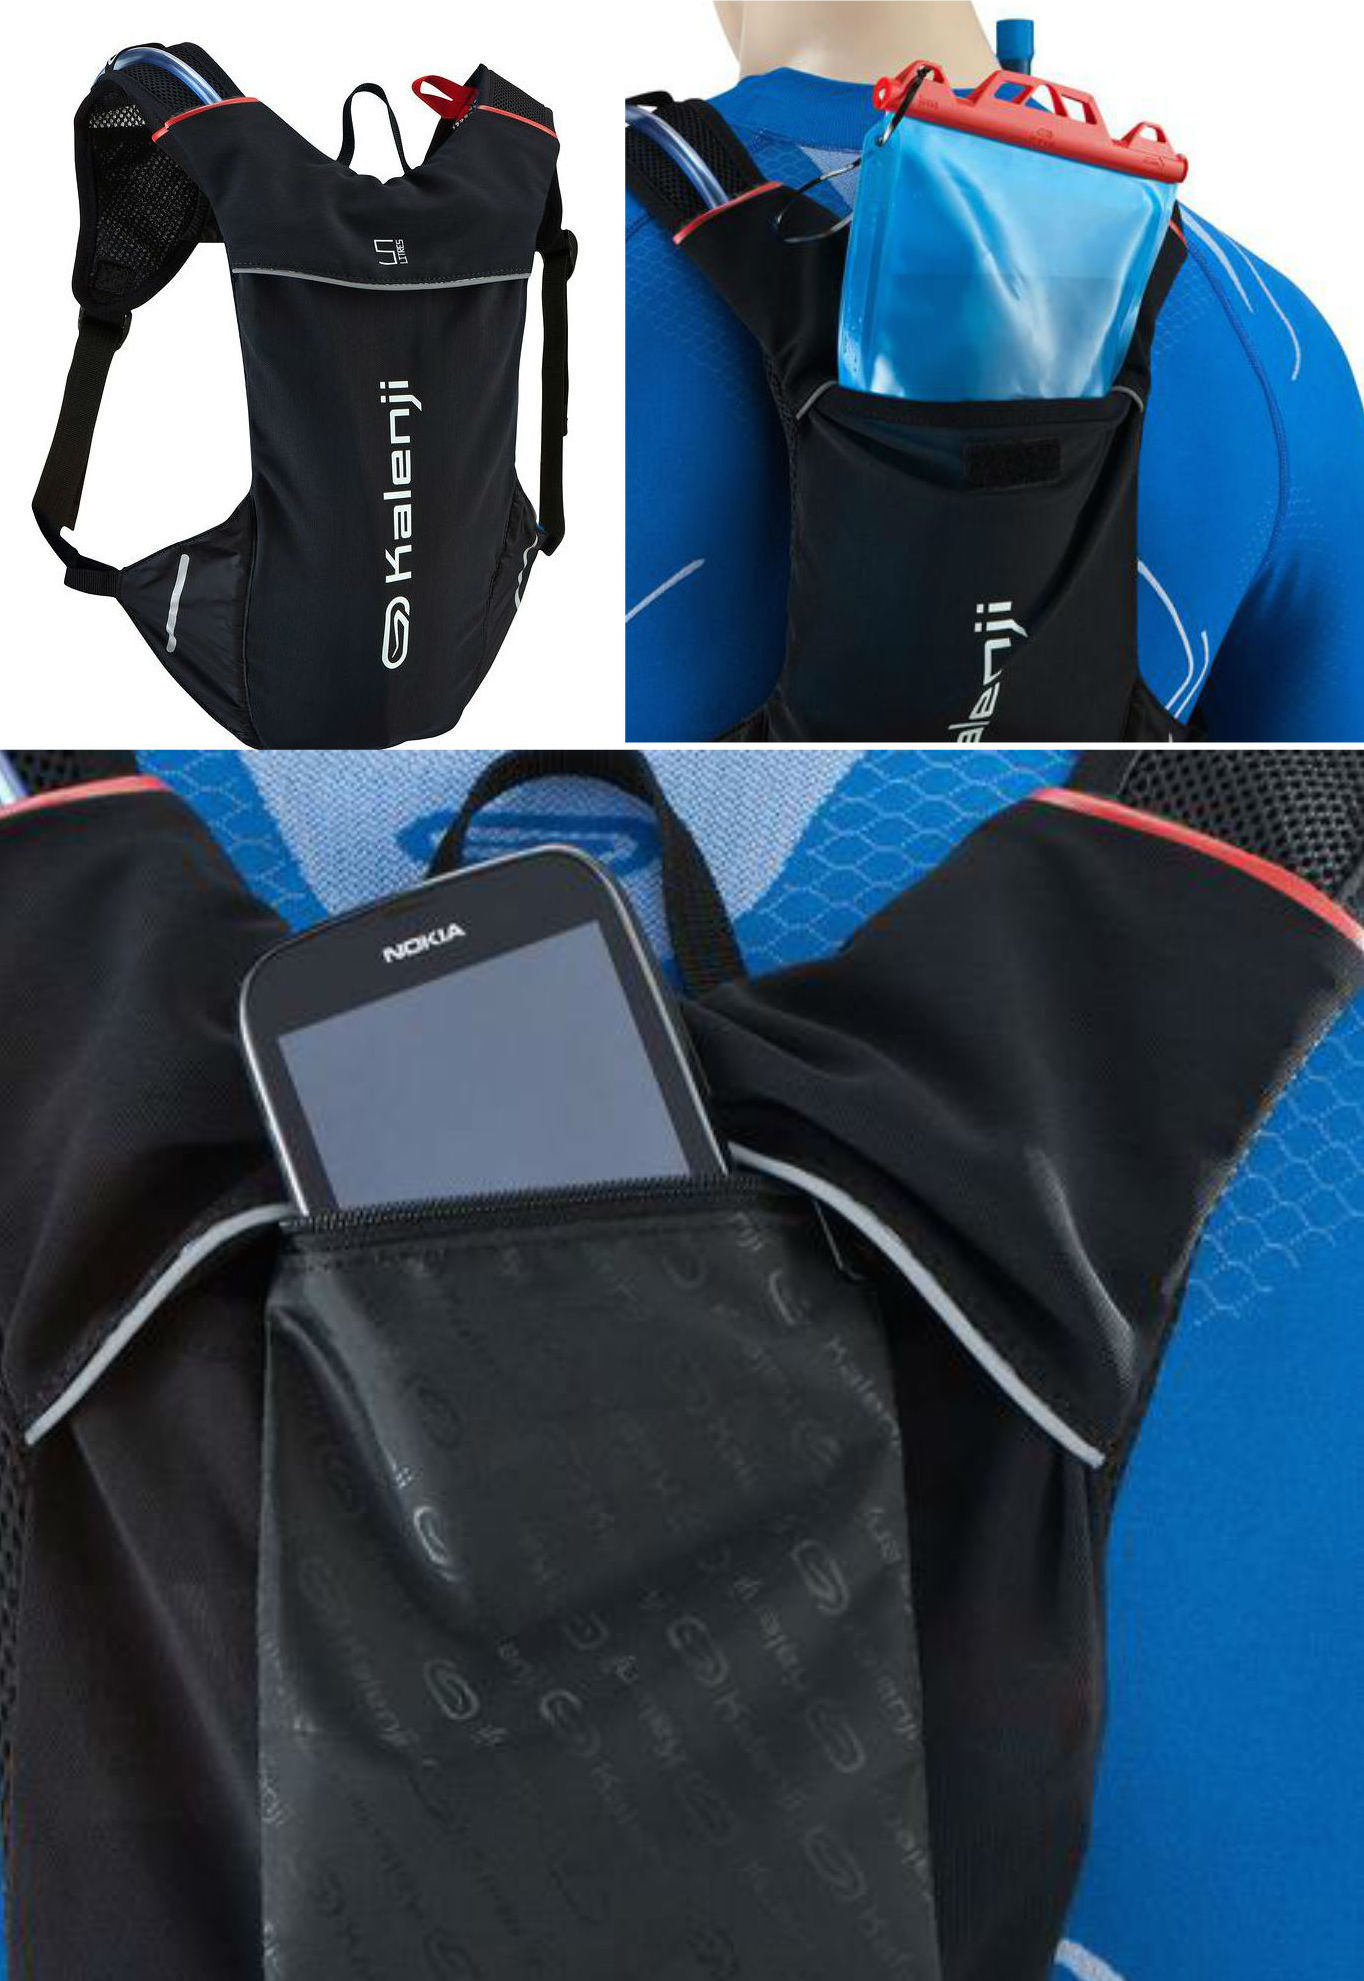 Обзор не гаджета. Выбираем лучший чехол для тренировок и другие аксессуары для смартфонов: повязки, сумки и силиконовый карман Adidas - 10